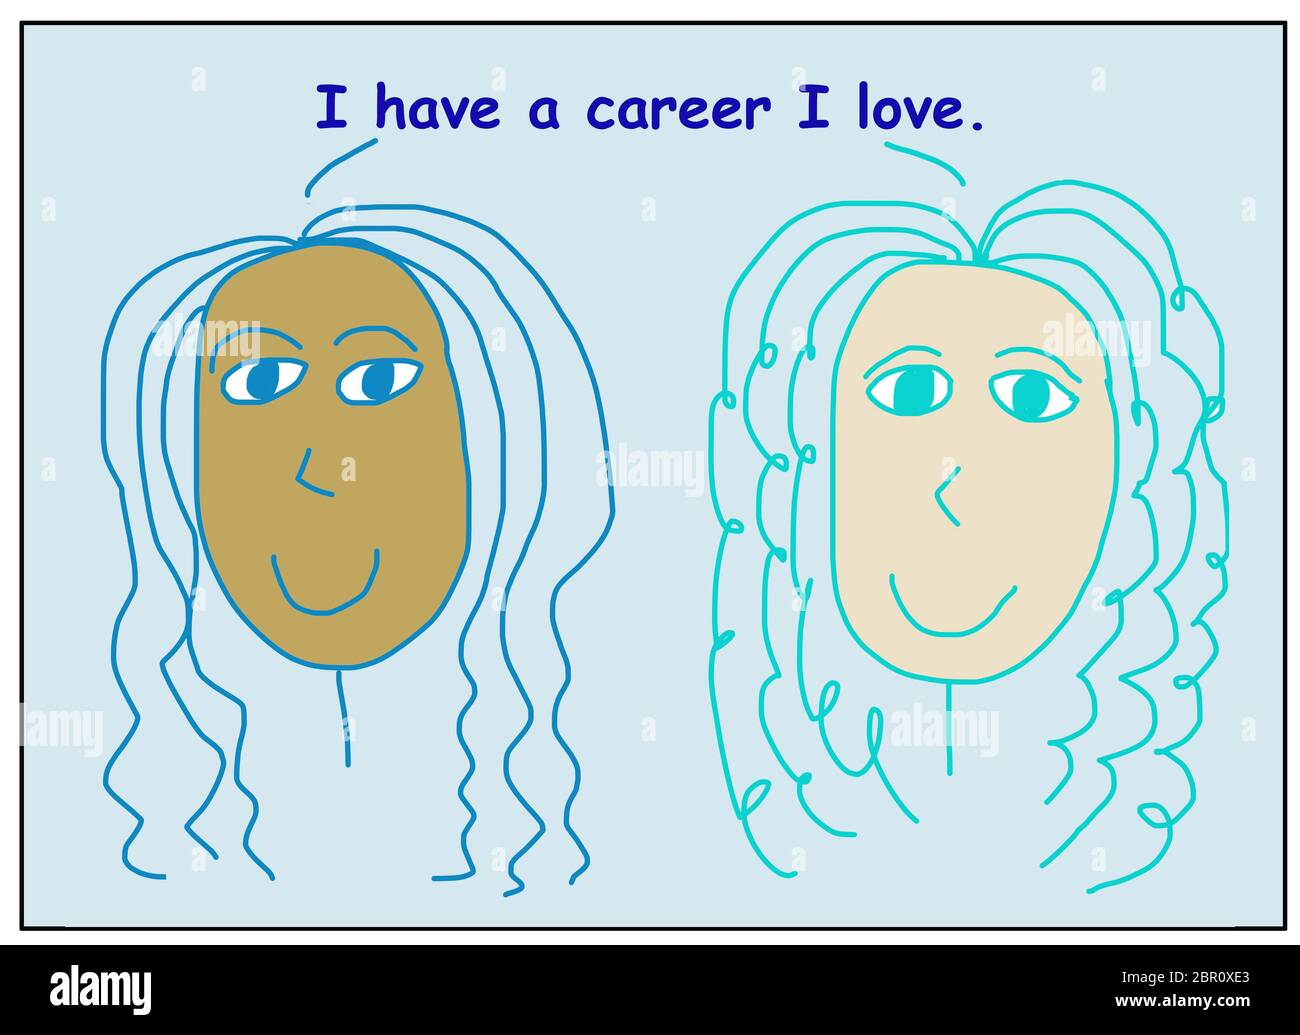 Farbe Cartoon von zwei lächelnden, schönen und ethnisch vielfältigen Frauen besagt, dass ich eine Karriere, die ich liebe. Stockfoto